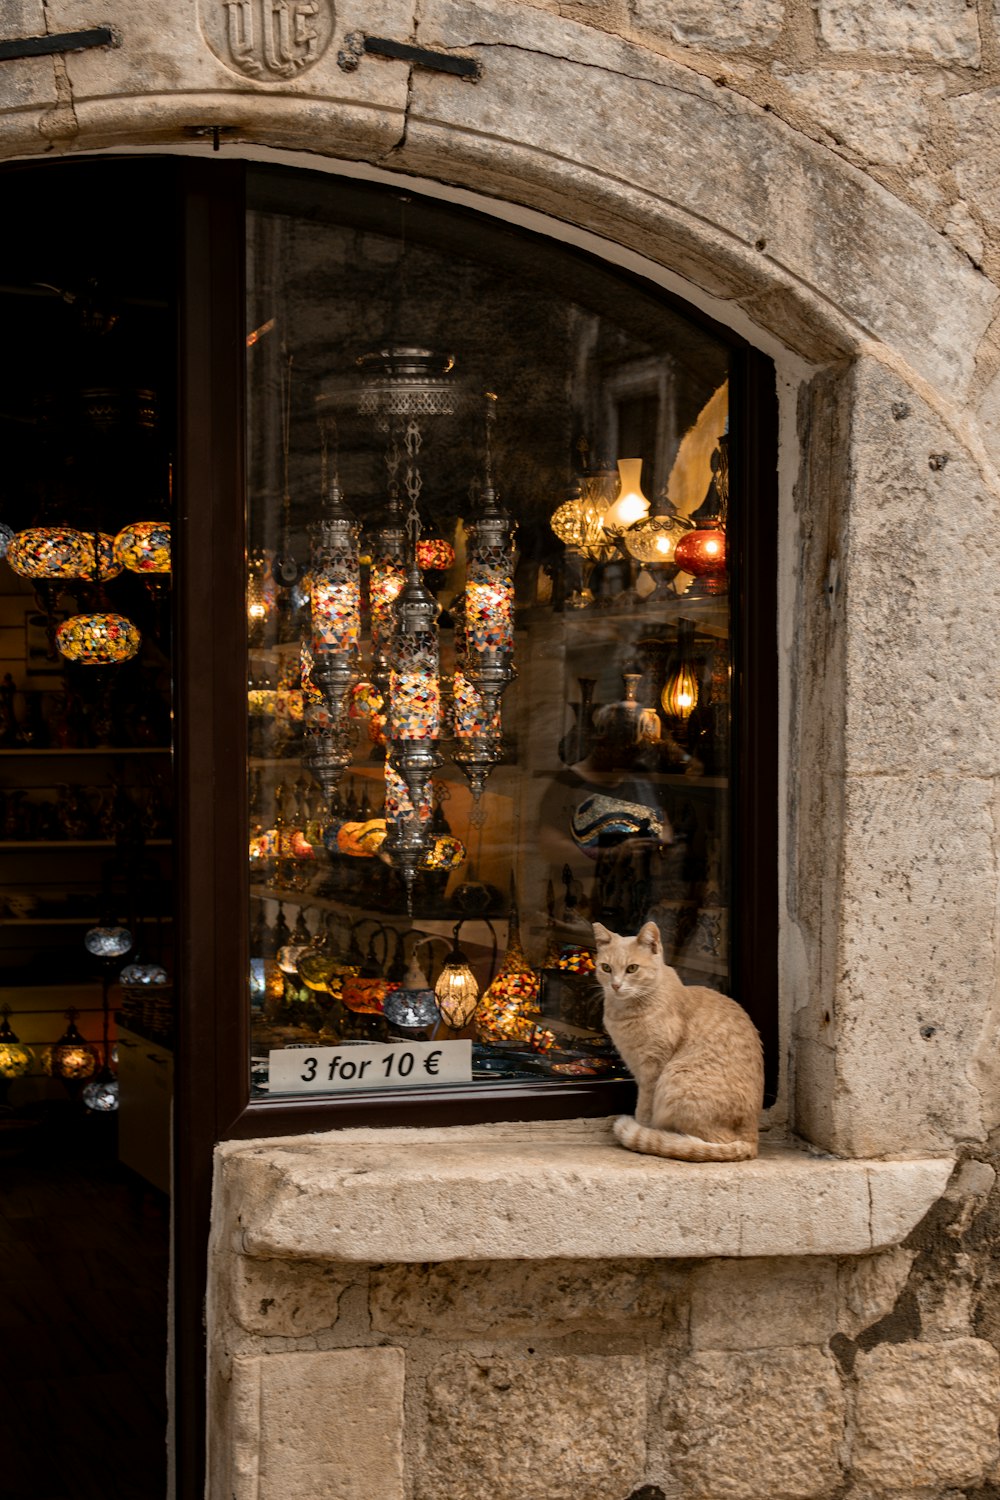 Un gato sentado en una repisa frente al escaparate de una tienda